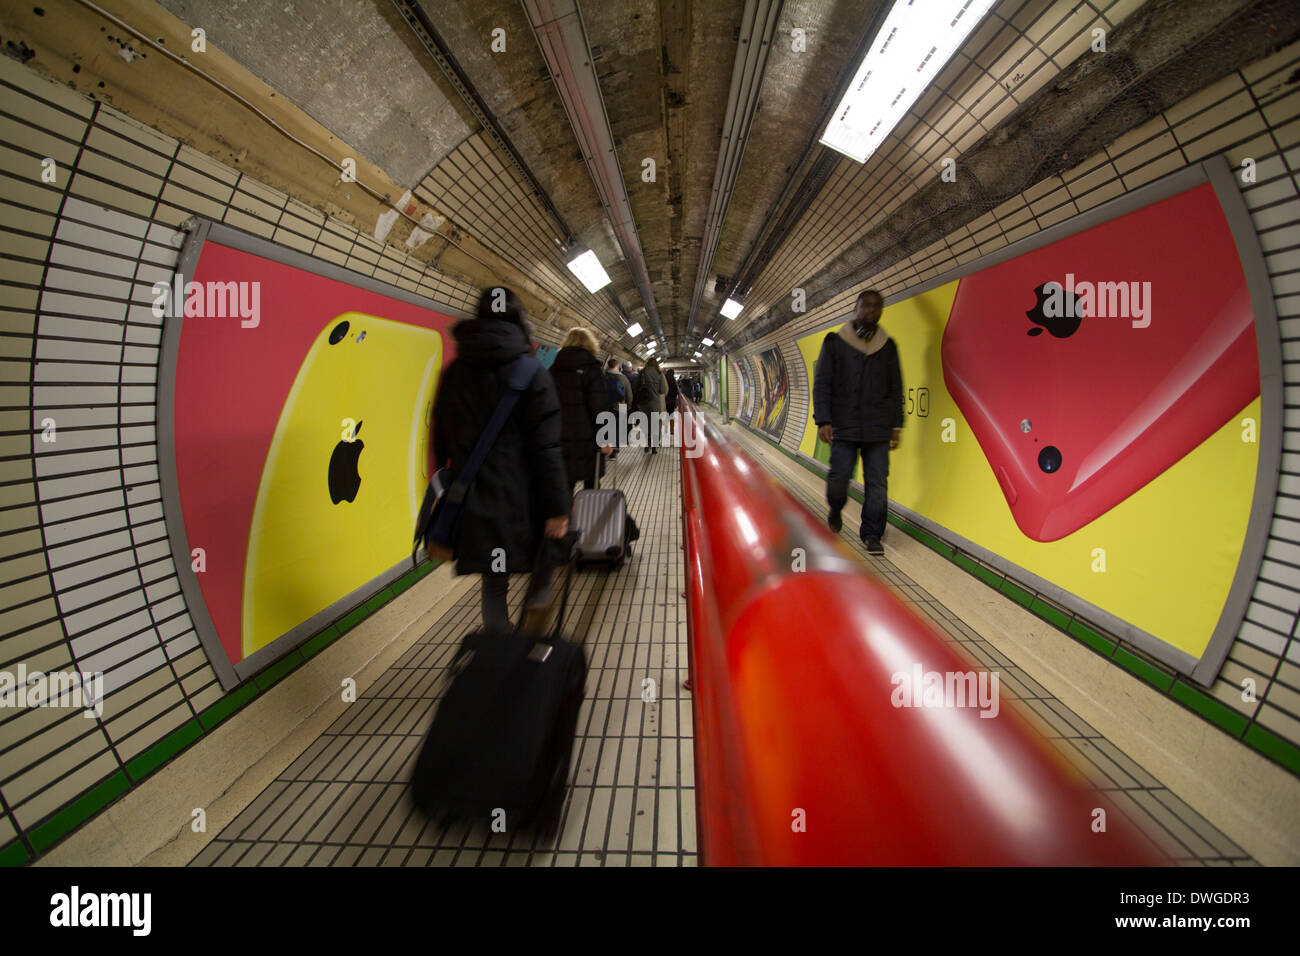 Annuncio per Apple IPHONE 5c sul tubo parete della stazione sulla metropolitana di Londra Foto Stock